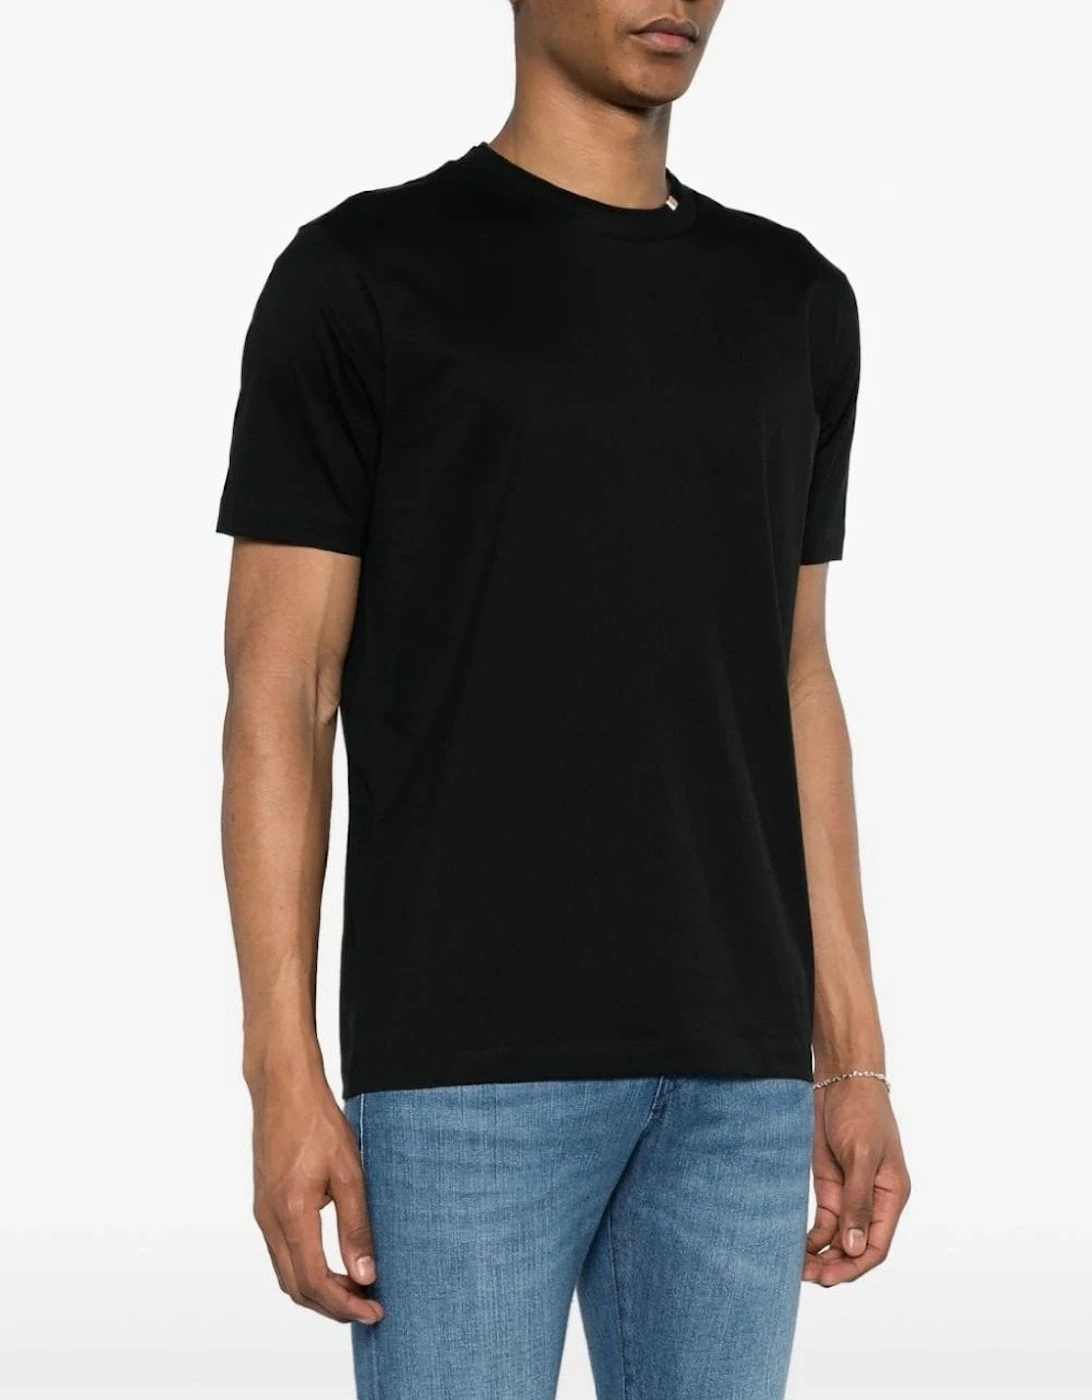 Tiburt 424 T-shirt Black